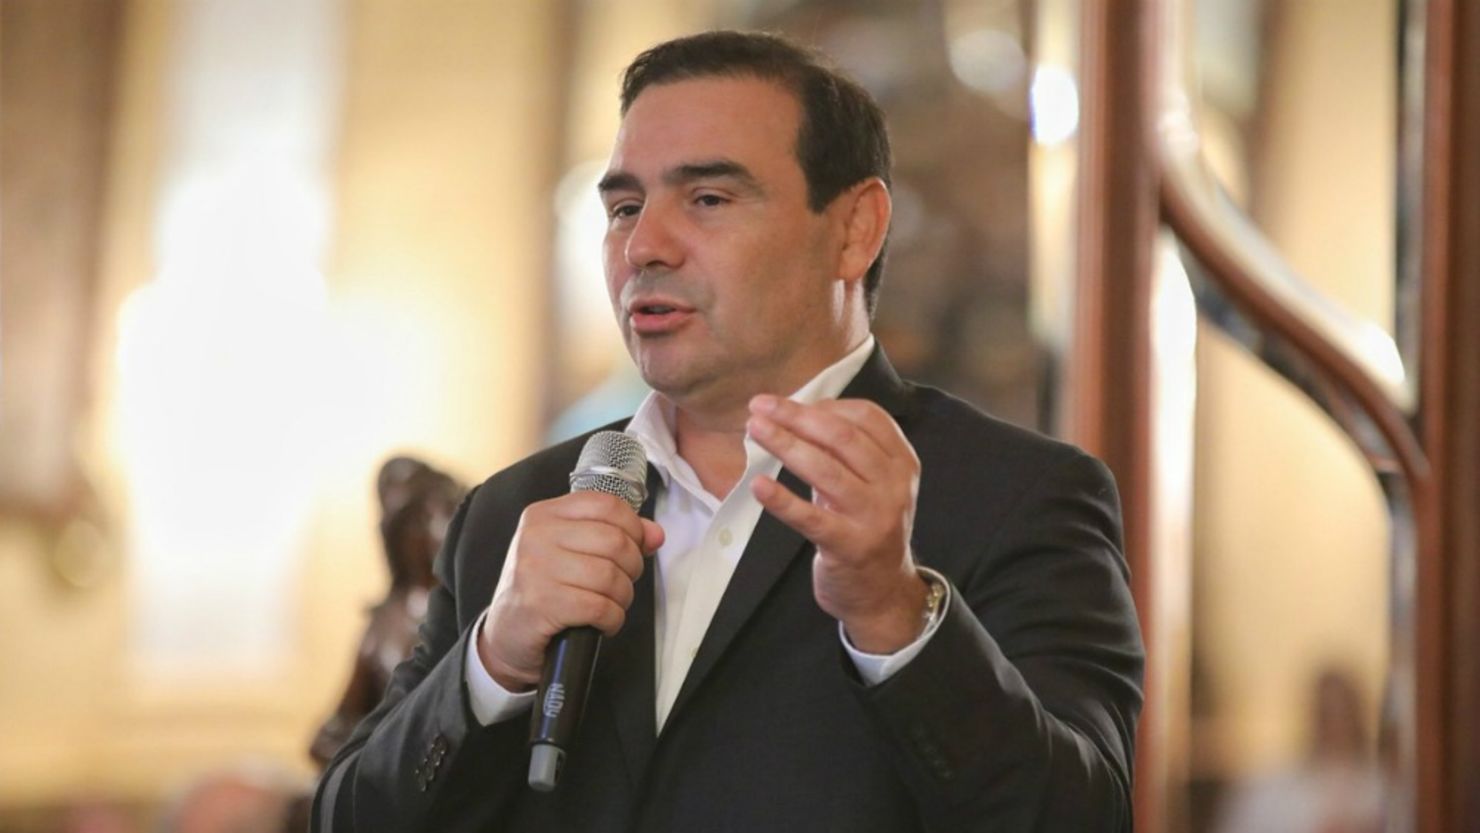 Gustavo Valdés, gobernador de Corrientes.